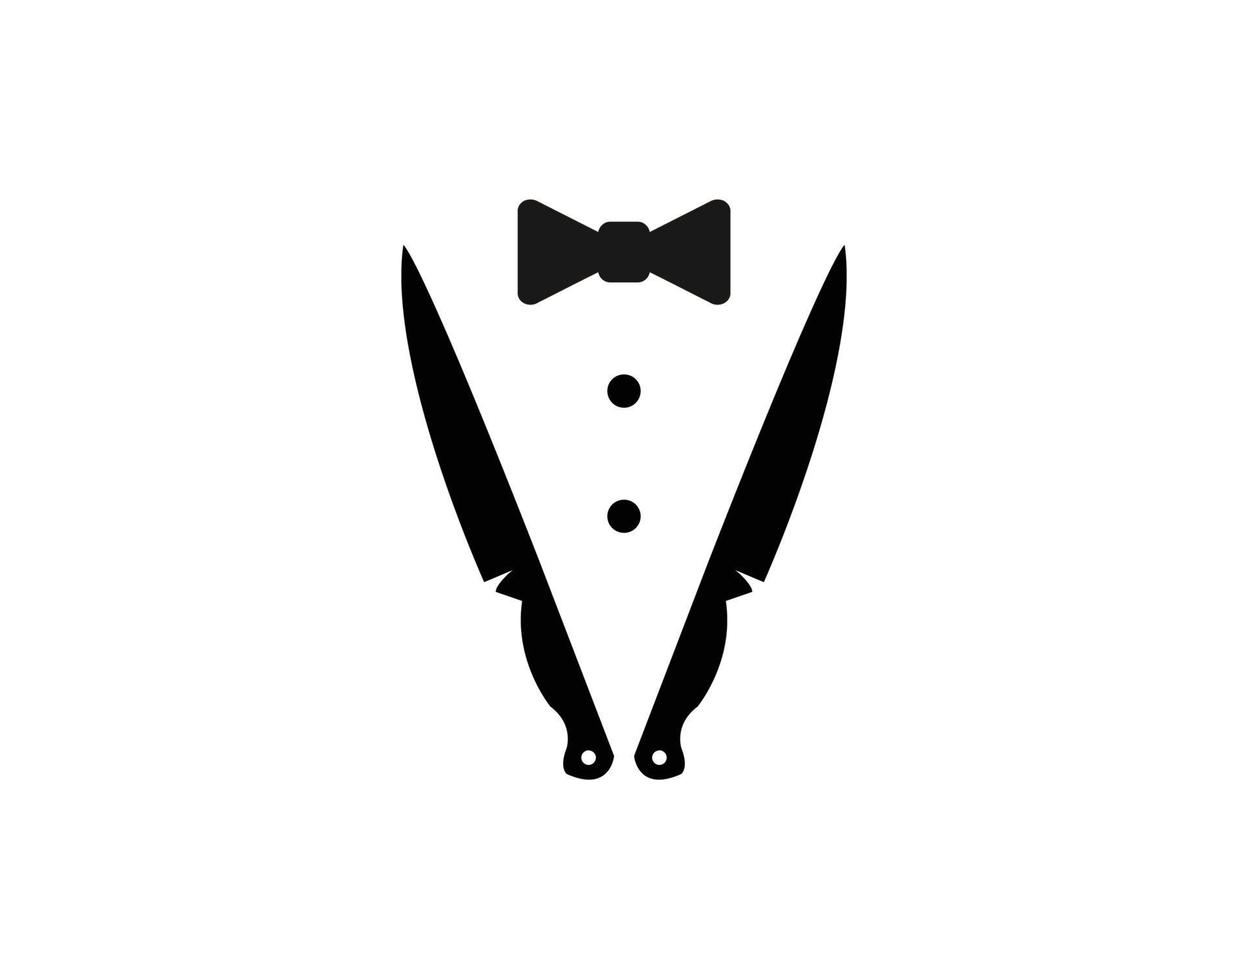 Bow Tie, Tuxedo, Knifes, Spoon Fork Restaurant Dinner logo design inspiration vector